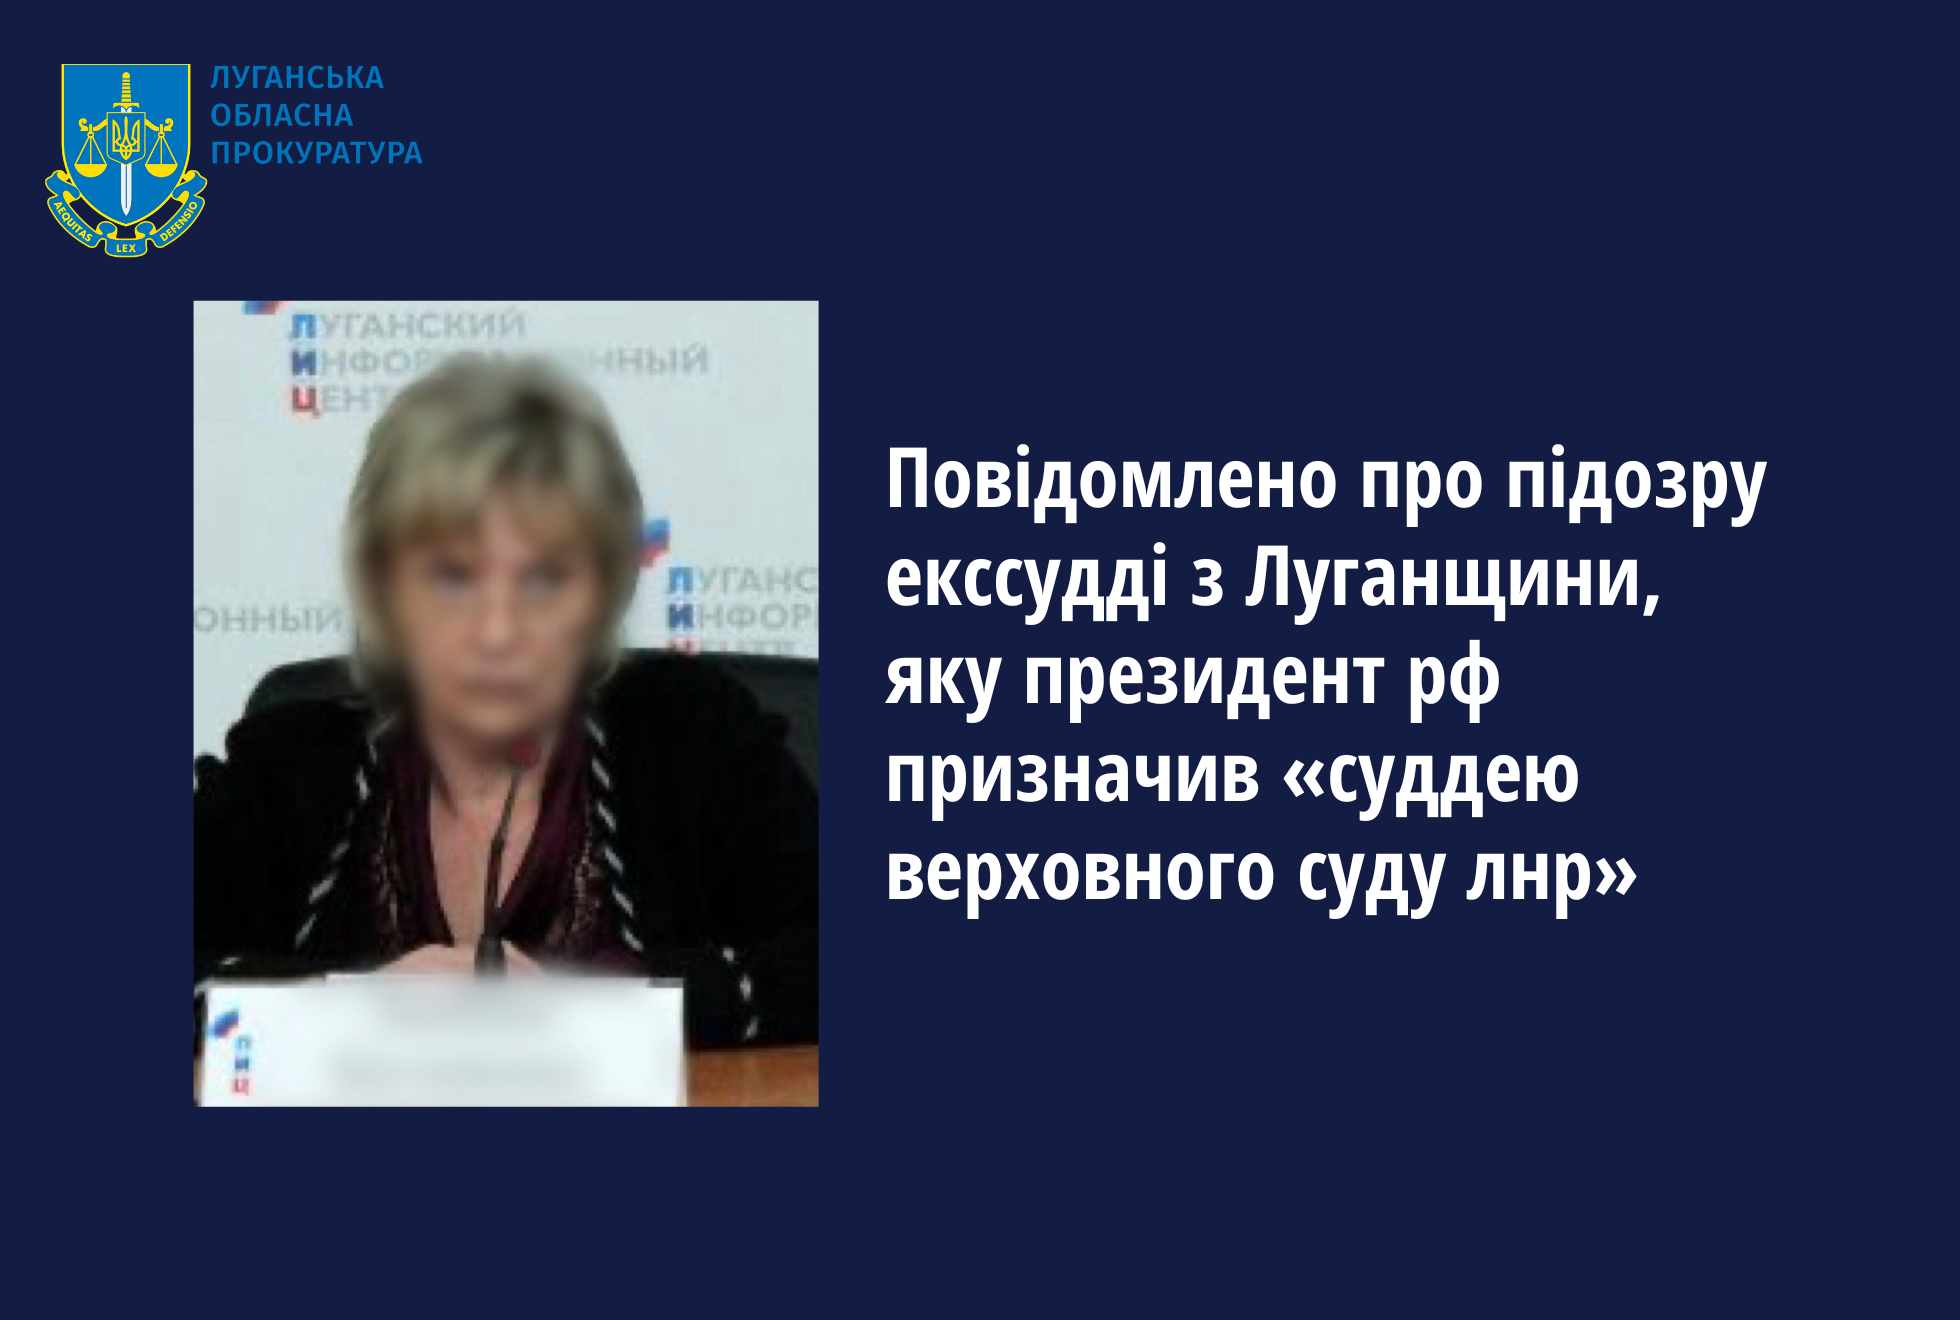 Повідомлено про підозру екссудді з Луганщини, яку президент рф призначив «суддею верховного суду лнр»